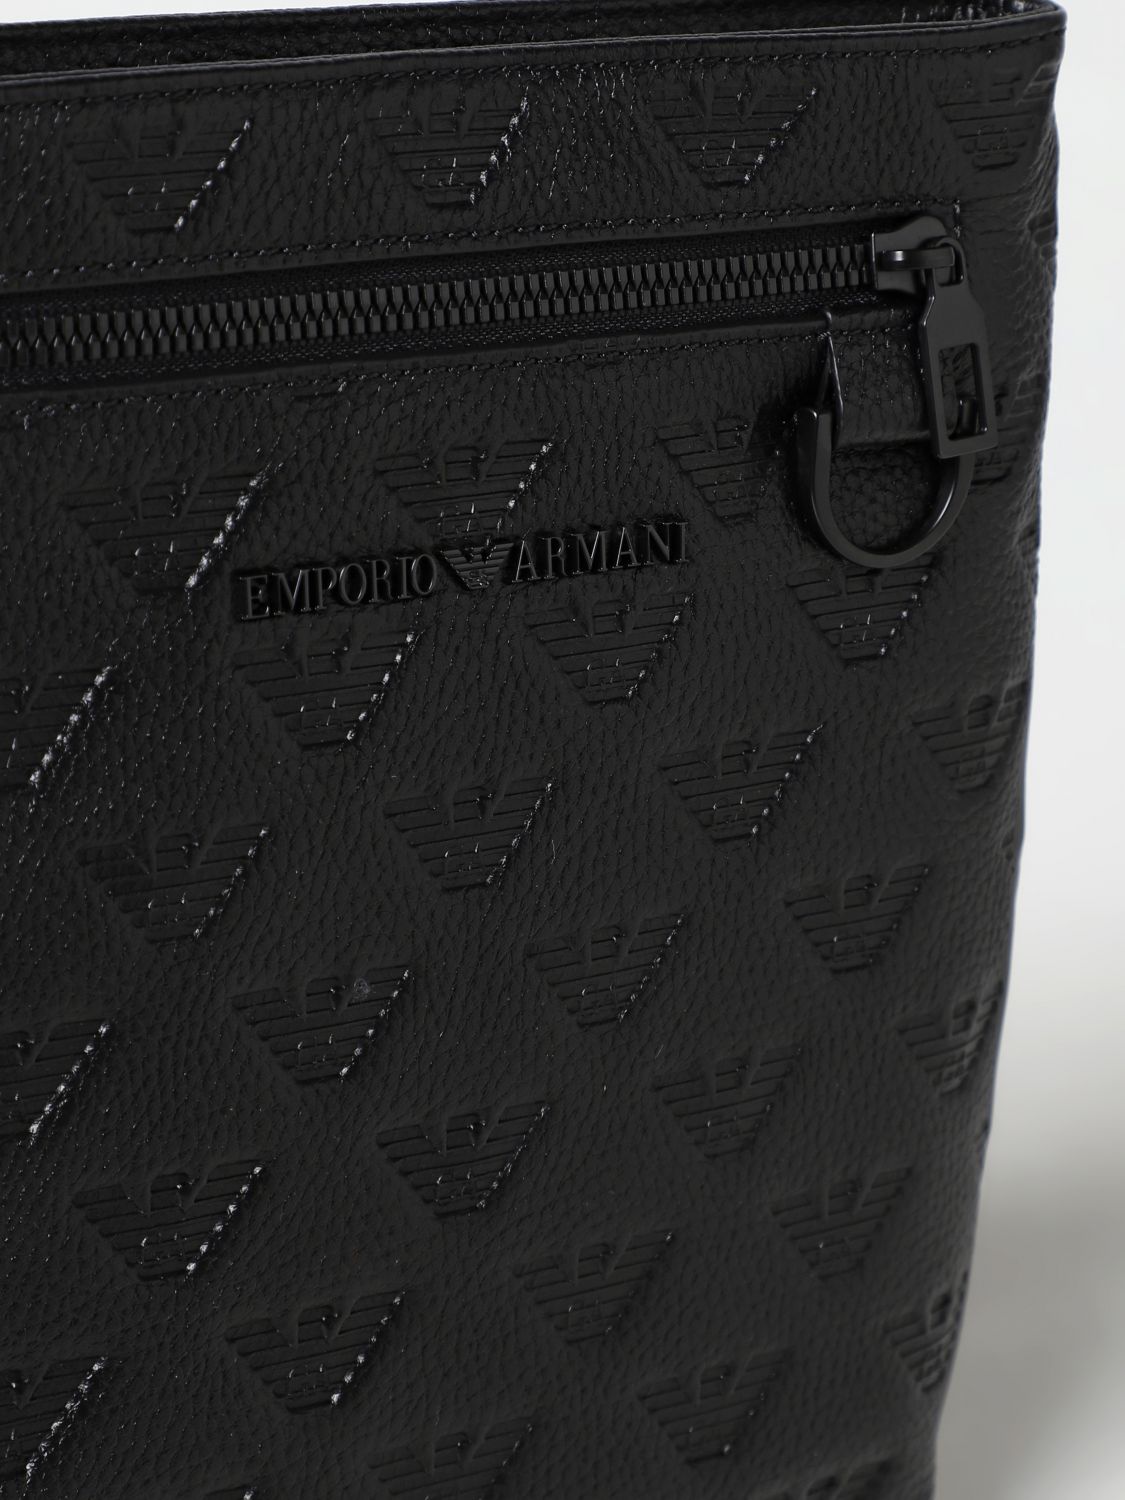 EMPORIO ARMANI: shoulder bag - Black  Emporio Armani shoulder bag  Y4M399Y142V online at